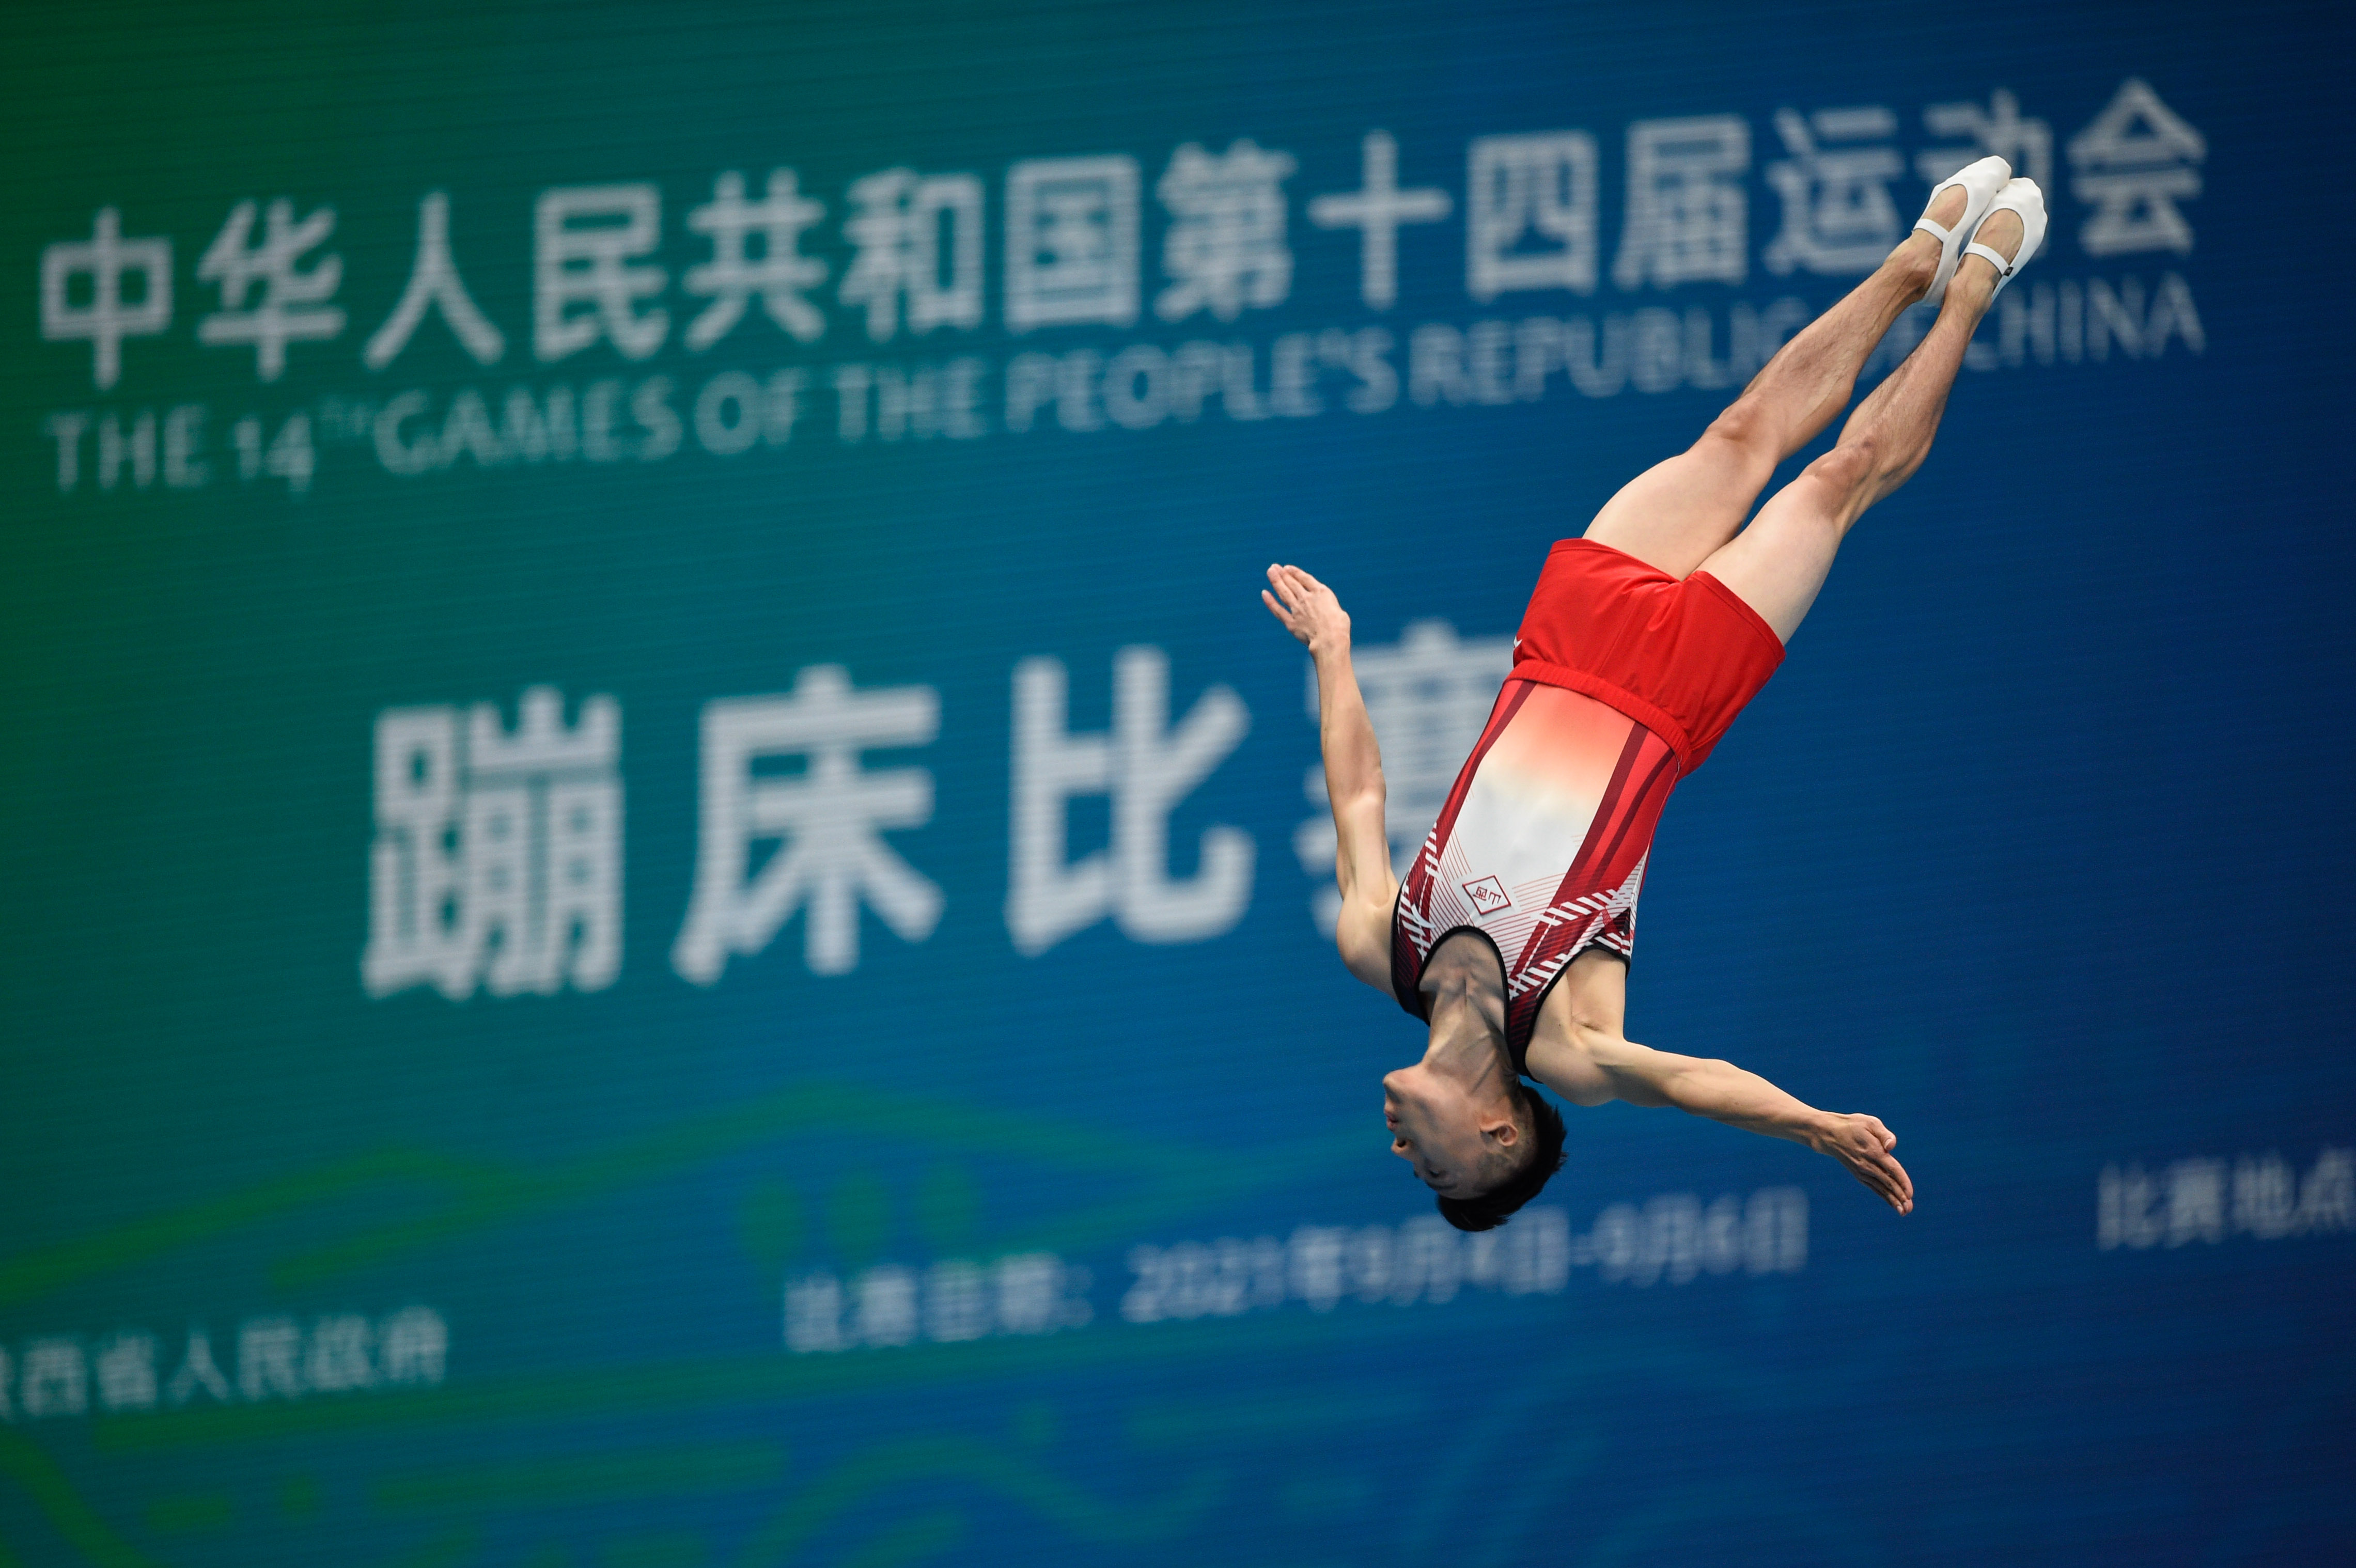 在东京奥运会上,这名四朝奥运老将在男子蹦床中摘银